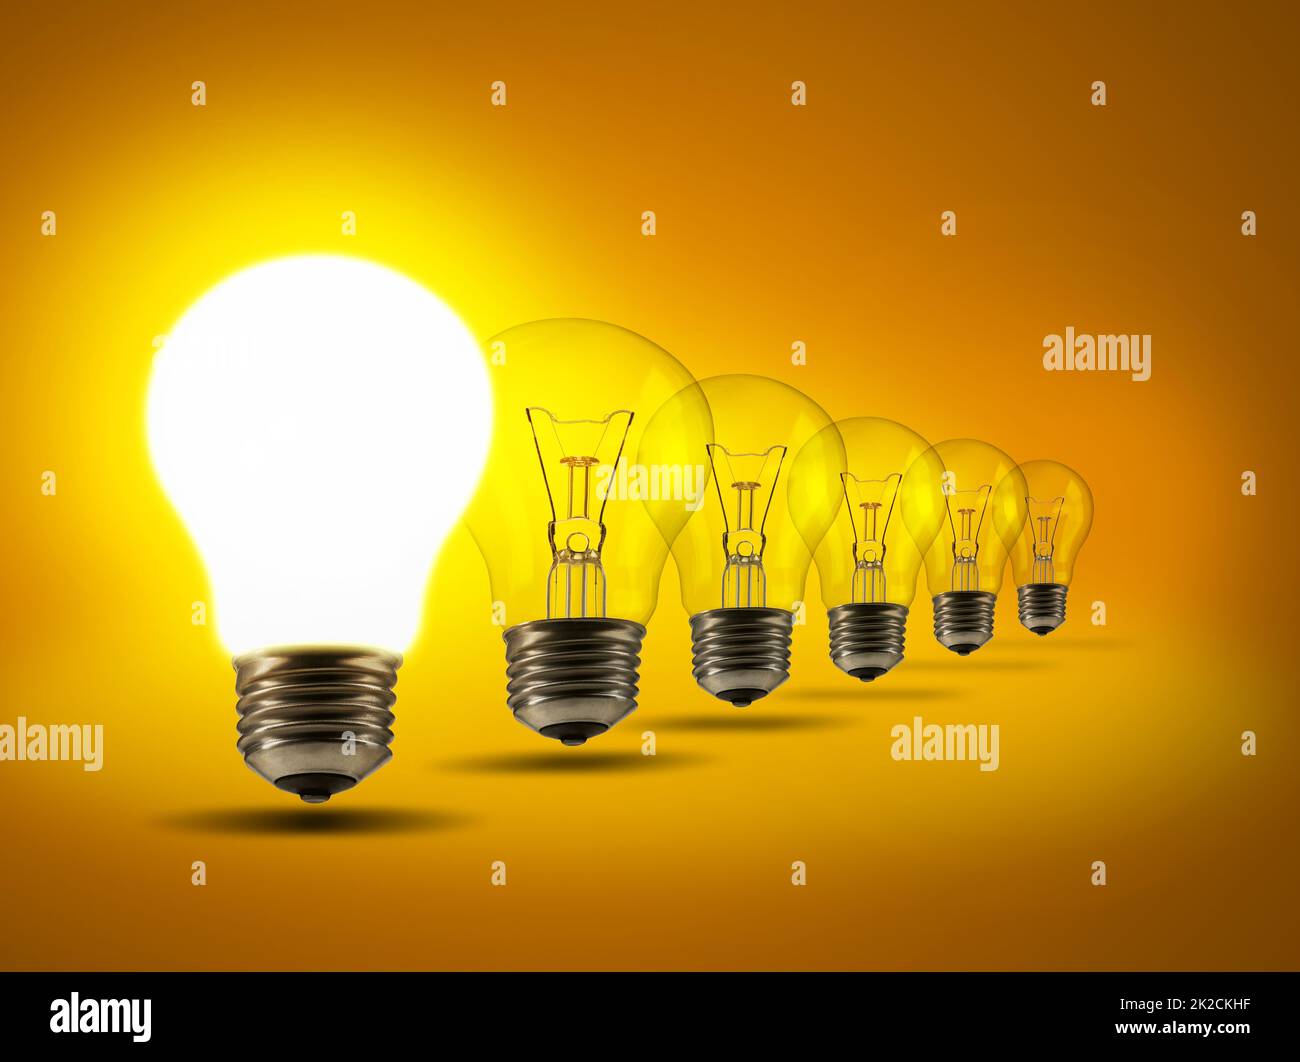 Setzen Sie Ihre Ideen an die erste Stelle. Studioaufnahme einer Reihe von Glühbirnen vor einem orangen Hintergrund. Stockfoto